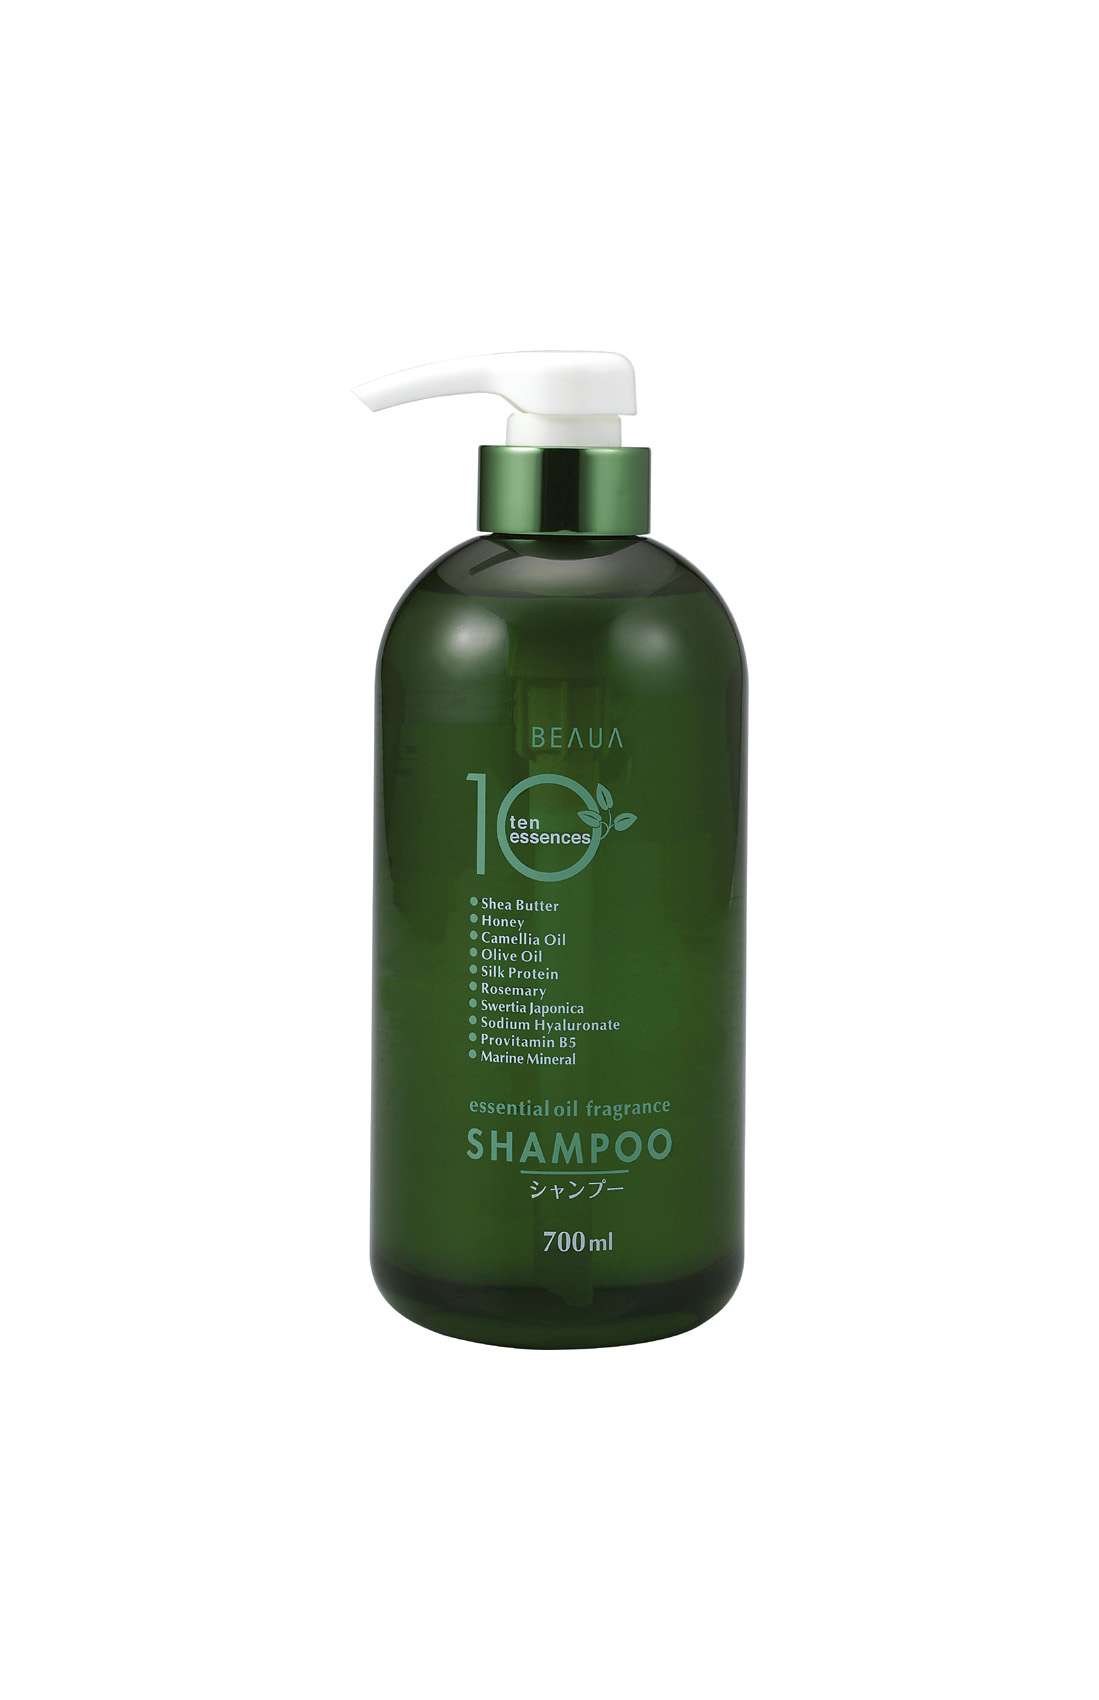 Nawilżająco-odżywczy szampon, Beaua 10 Essences 66 zł